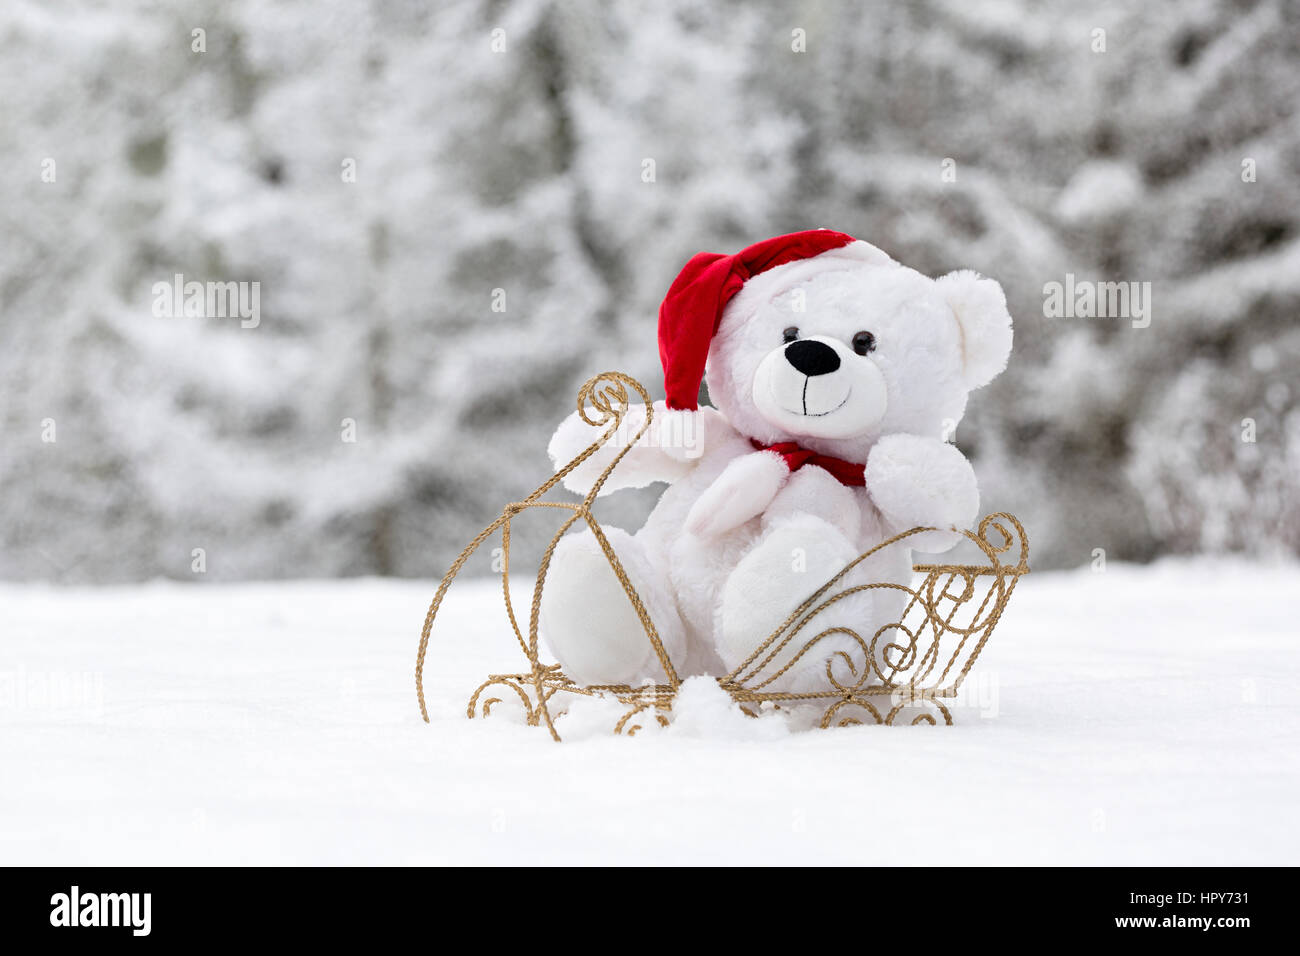 Weihnachten Teddy Bear in Schnee Schlitten Stockfotografie - Alamy